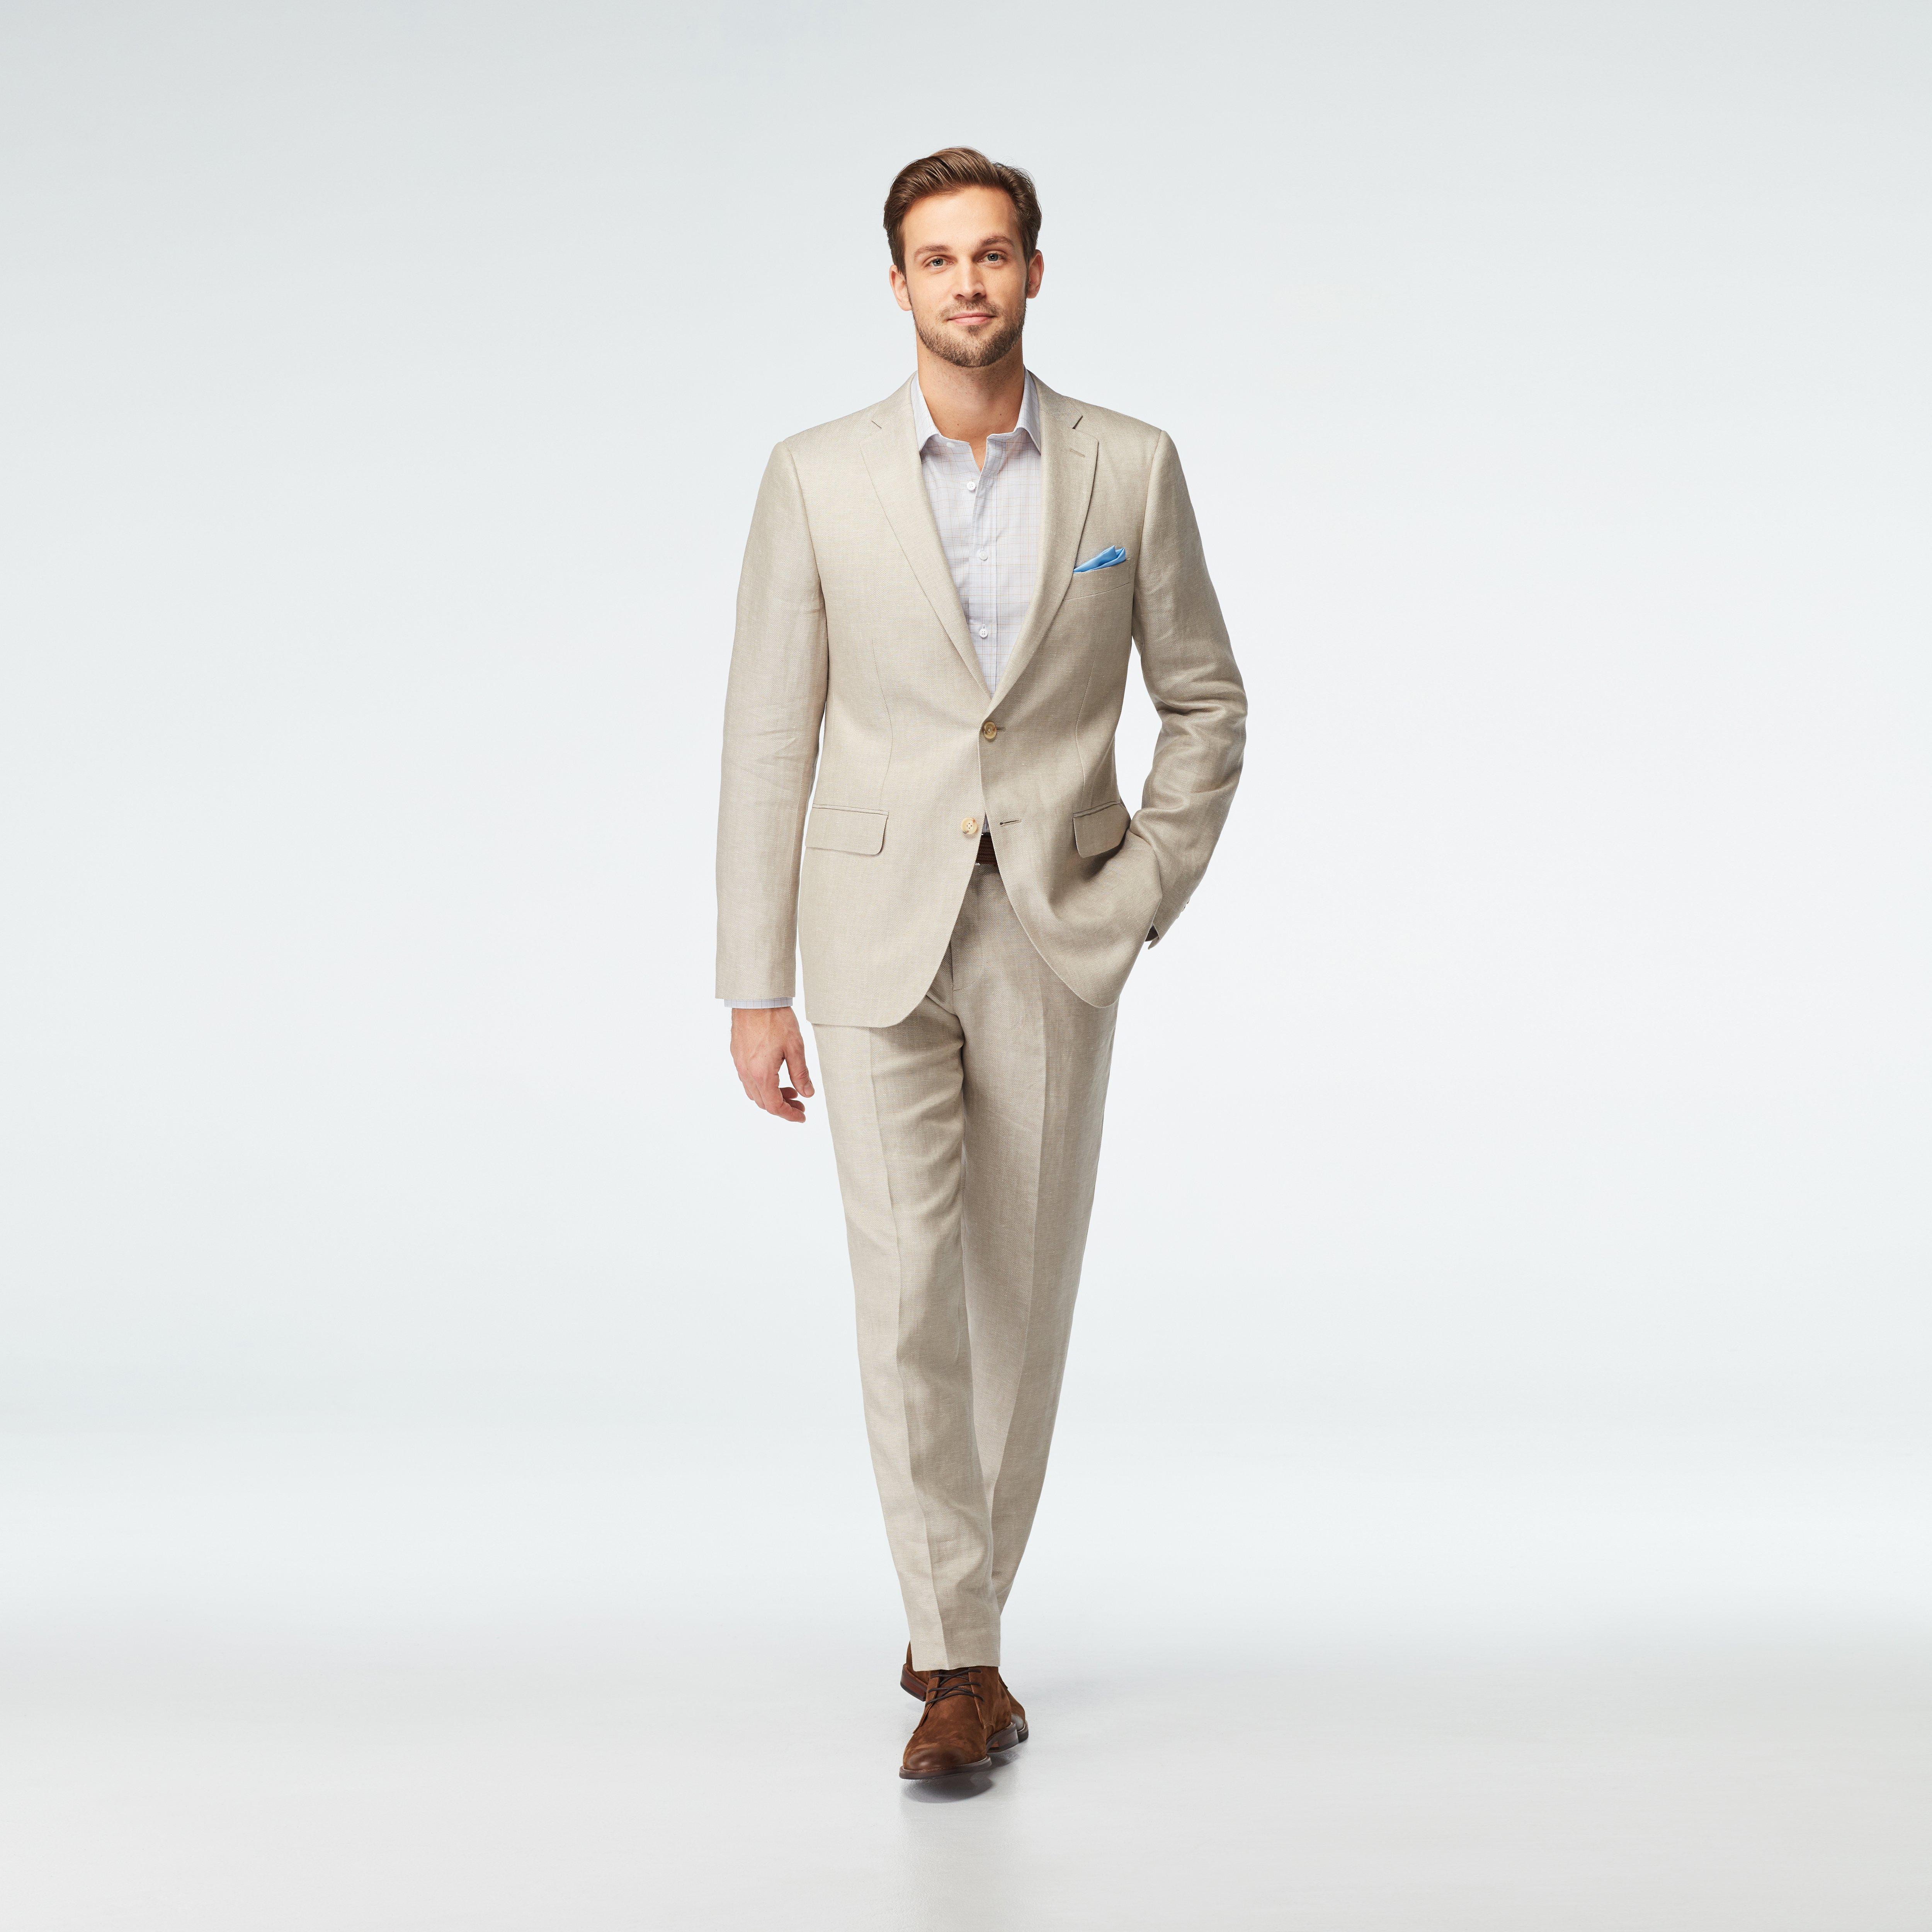 Premium Suits - Men's Custom Suits | INDOCHINO